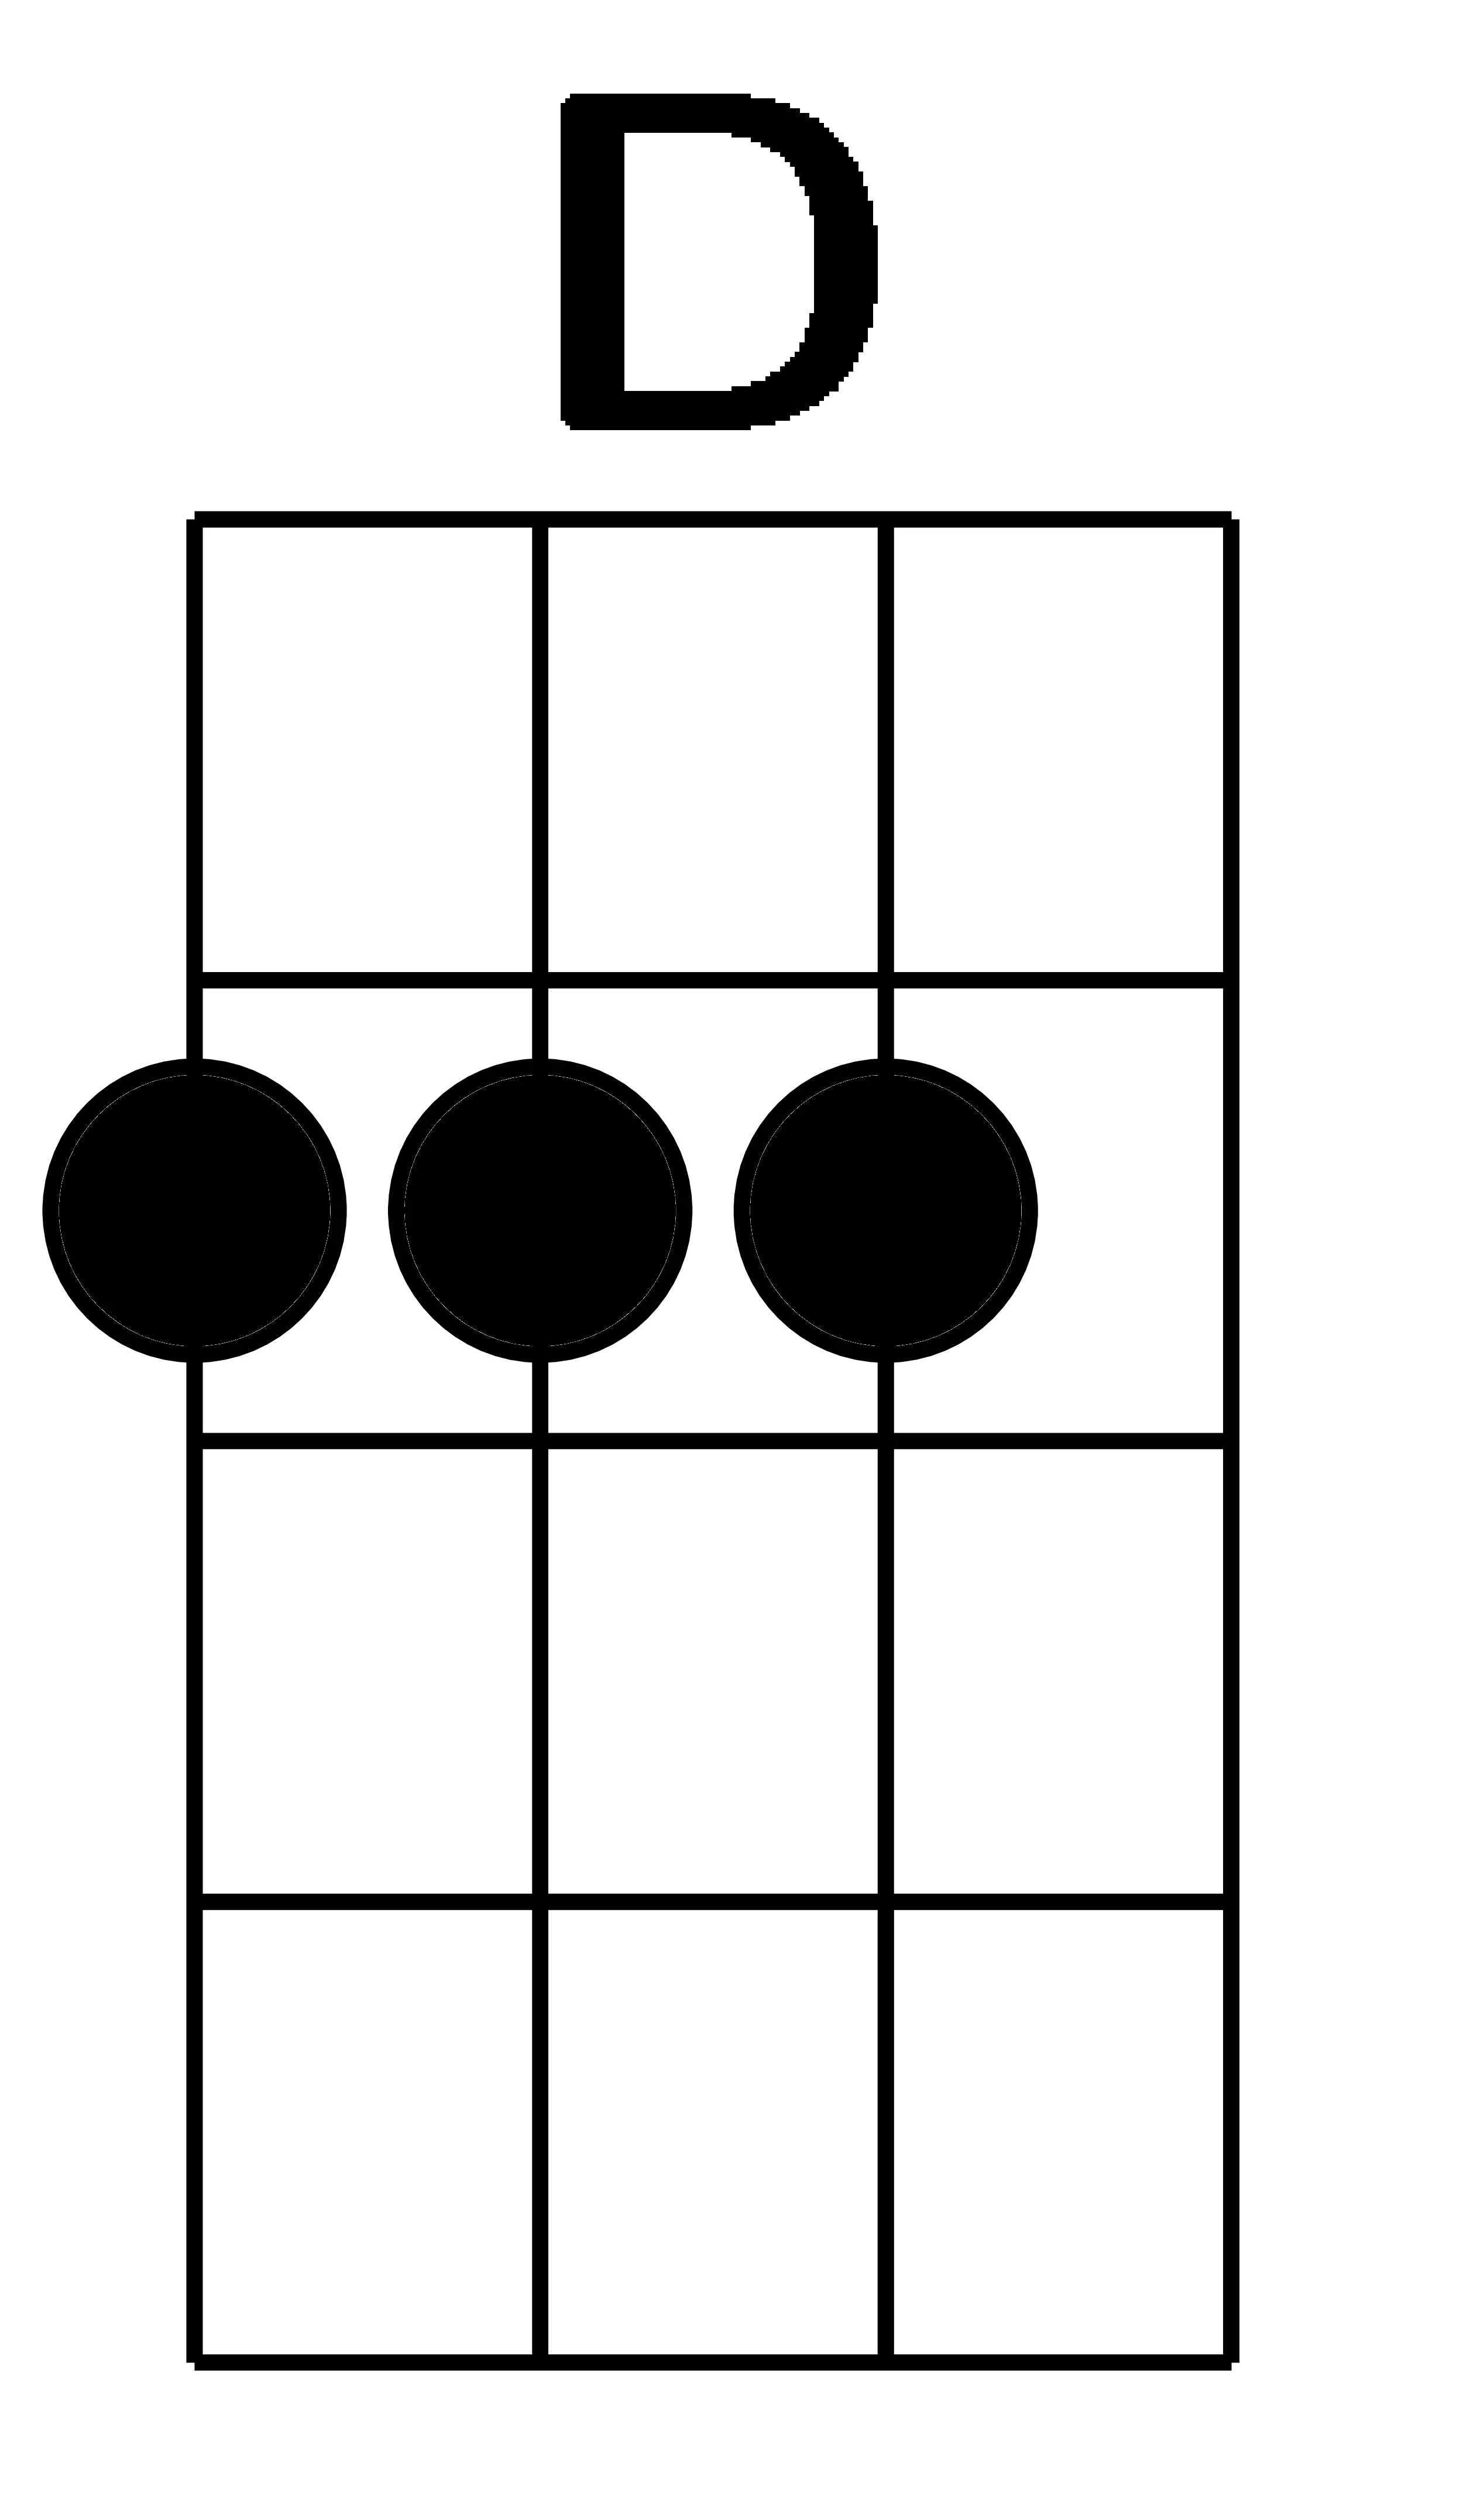 Perfect ukulele chords